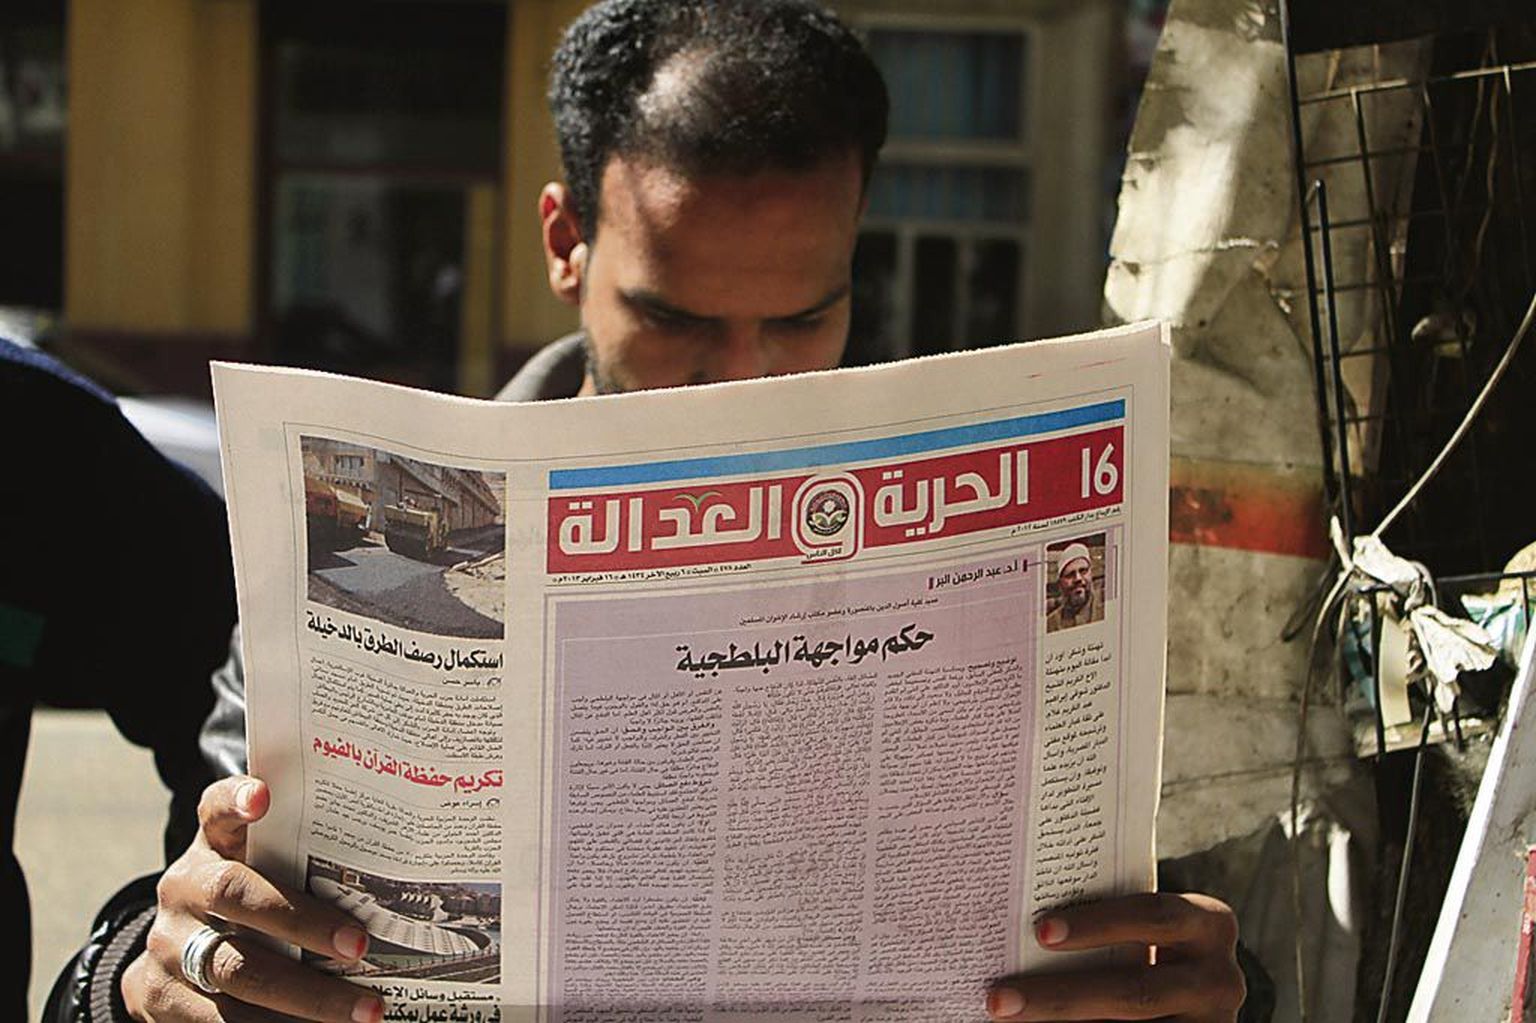 Egiptlane uurib muslimivendade partei ajalehte.